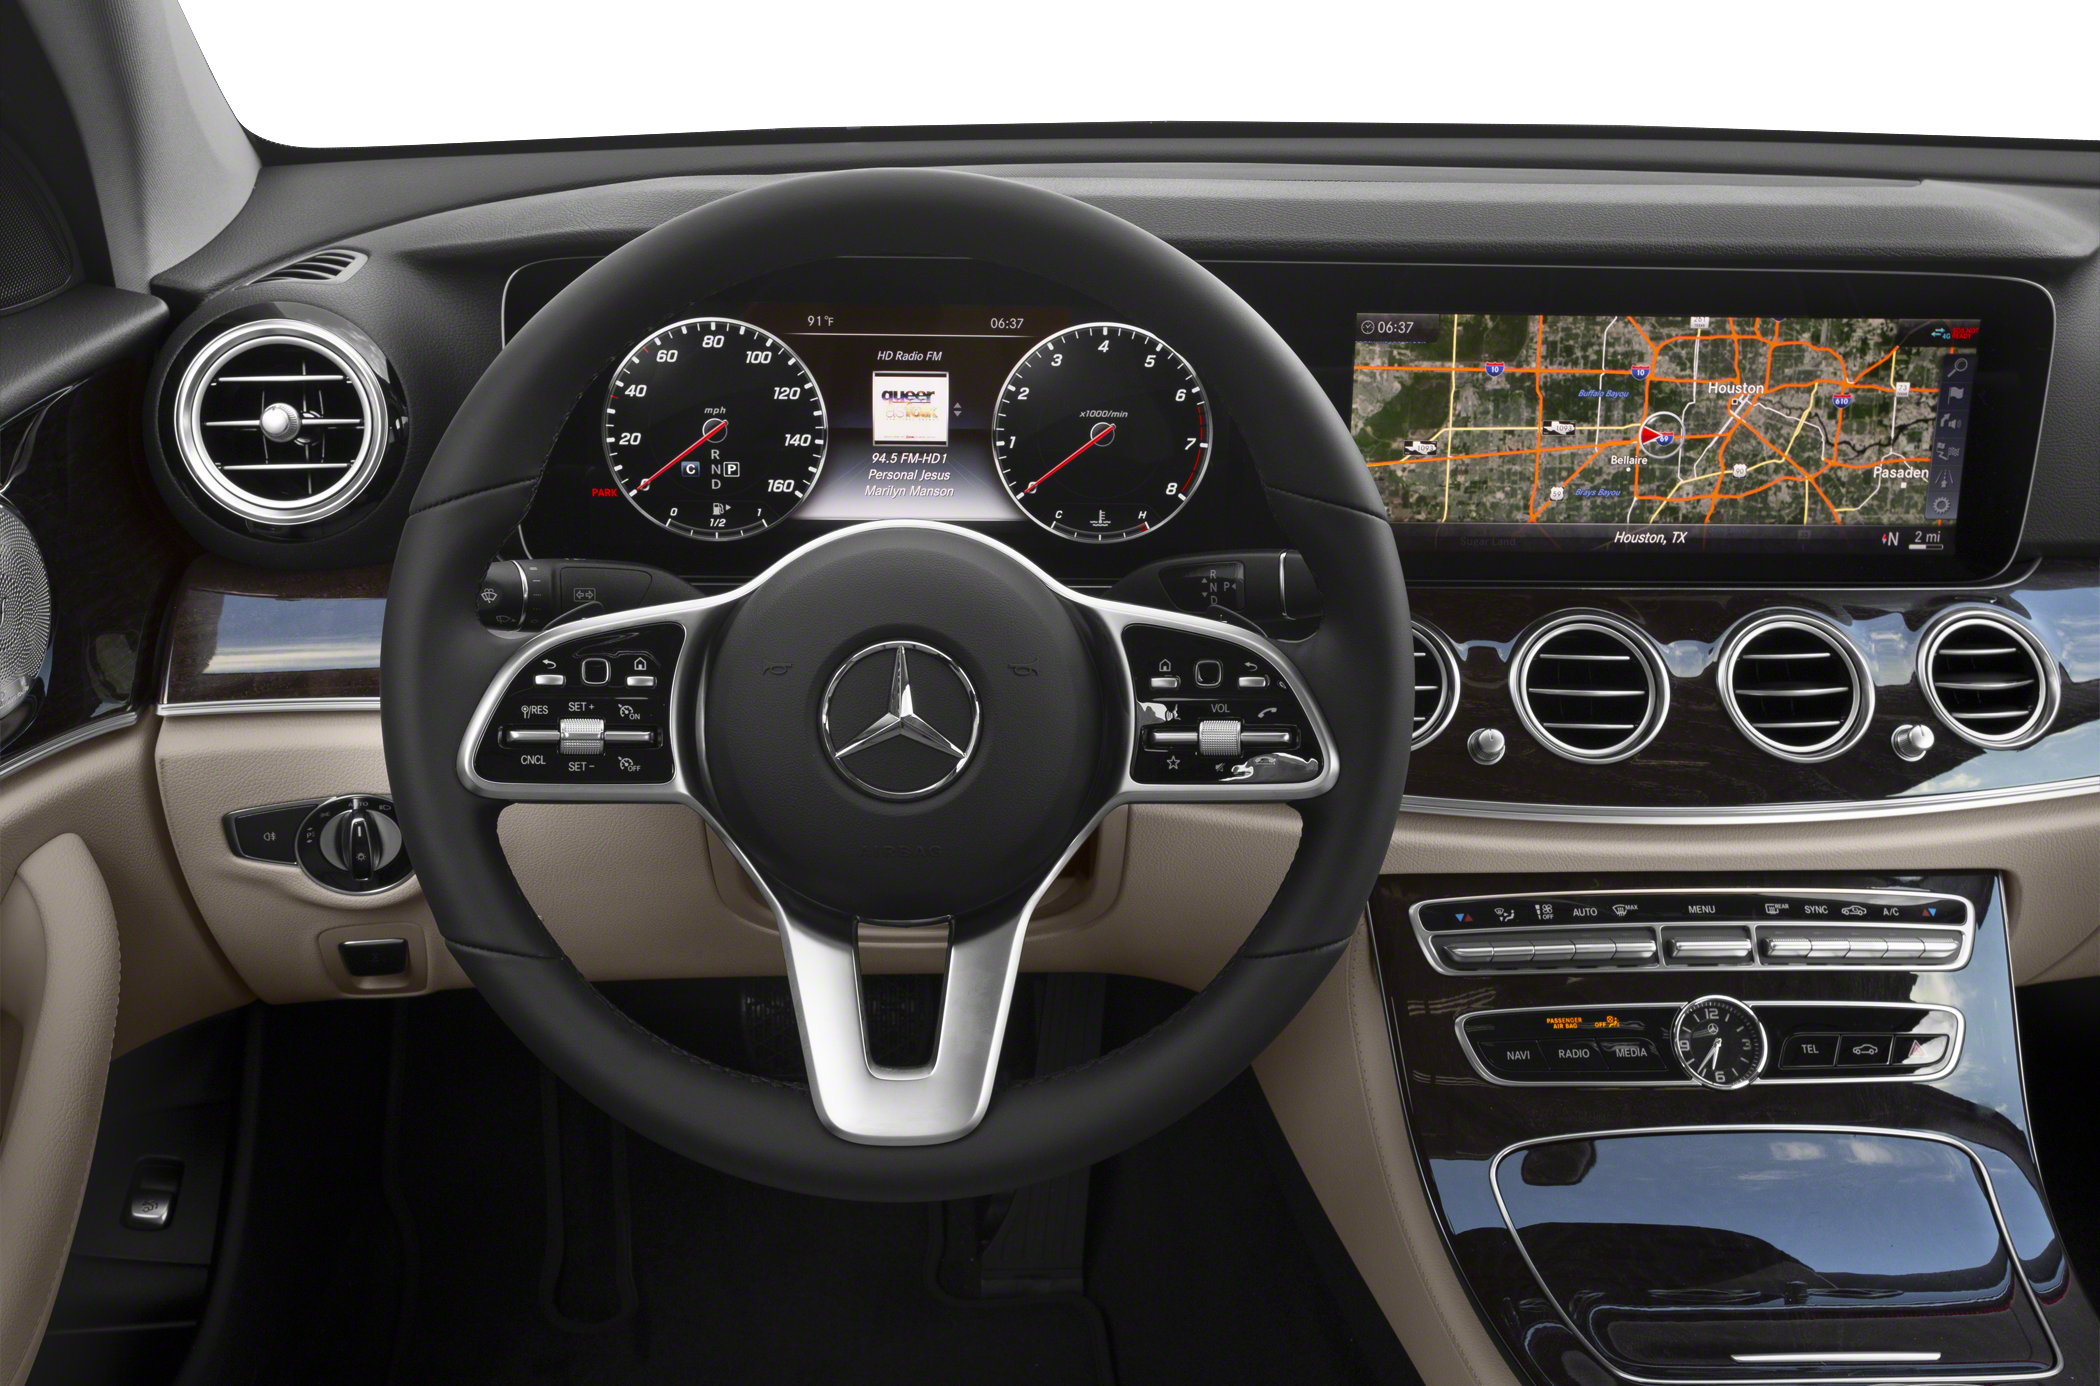 2020 Mercedes-Benz E-Class